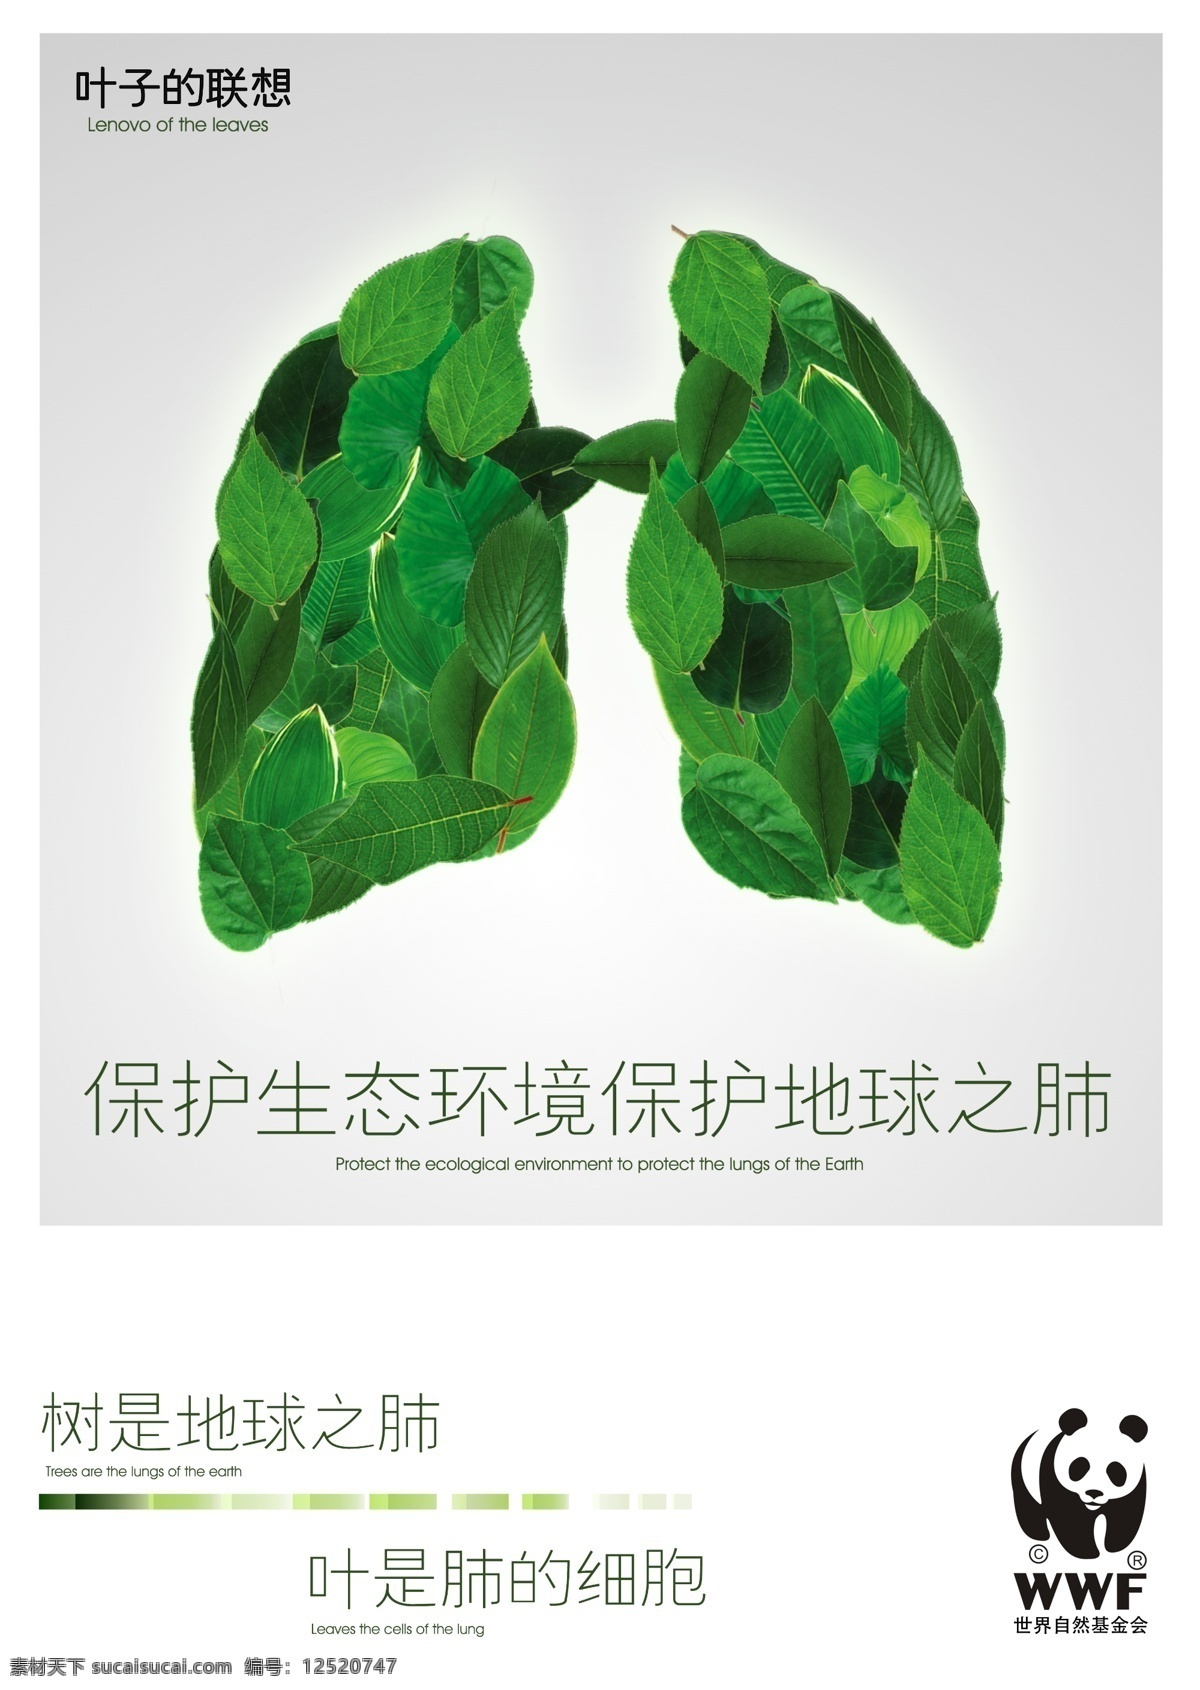 肺 肺部 公益 公益海报 广告设计模板 生态环境 树叶 保护 环境 海报 叶子 世界自然 基金会 地球之肺 叶子的联想 源文件 环保公益海报